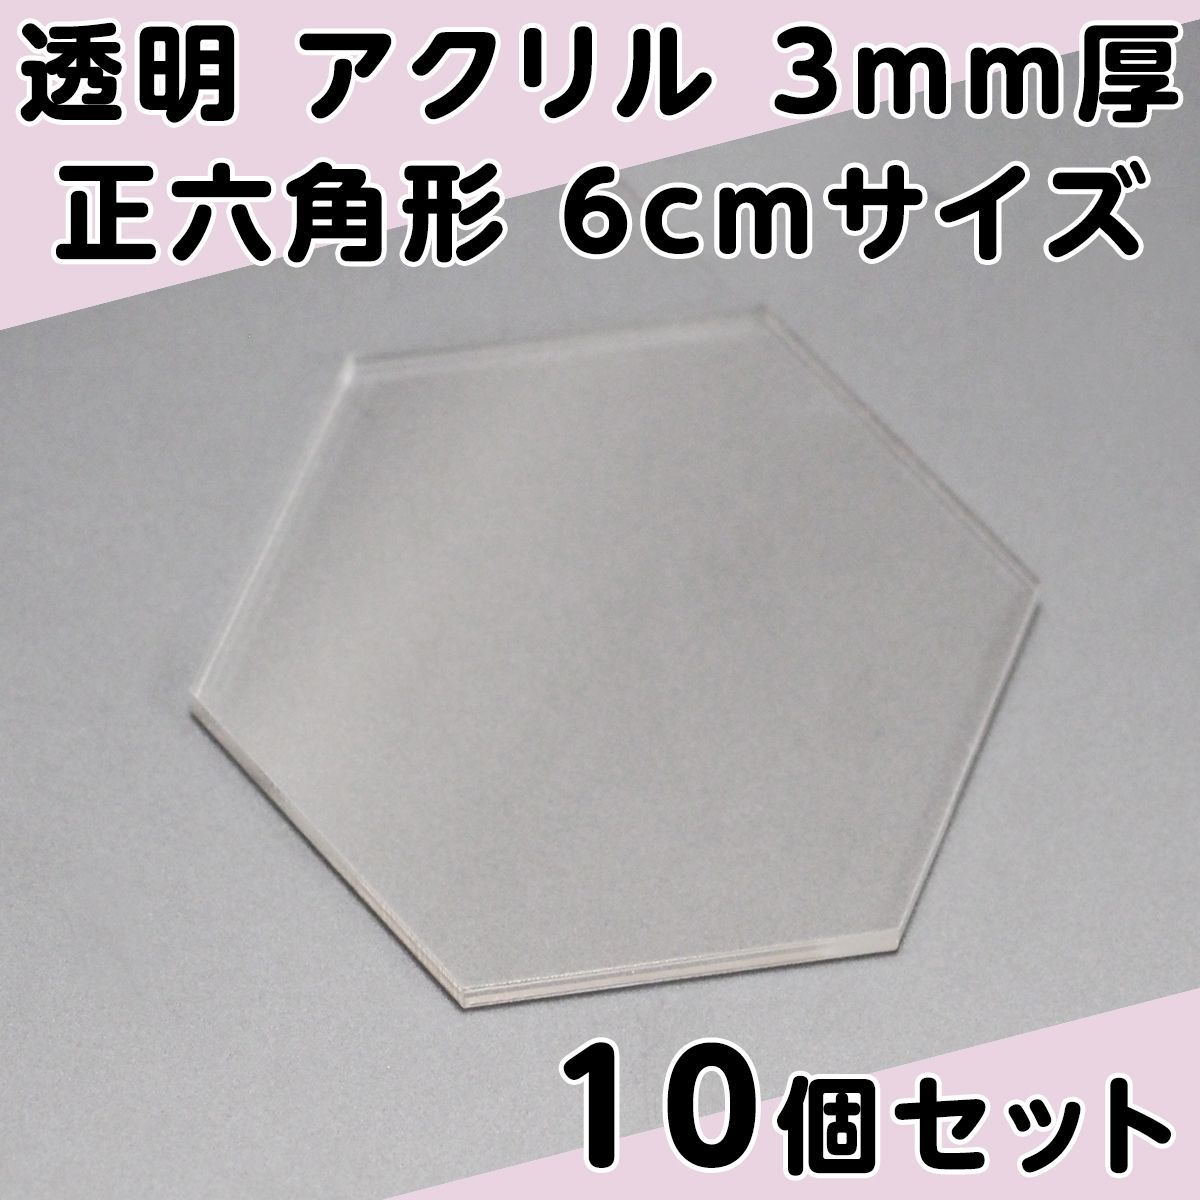 透明 アクリル 3mm厚 正六角形 6cmサイズ 10個セット